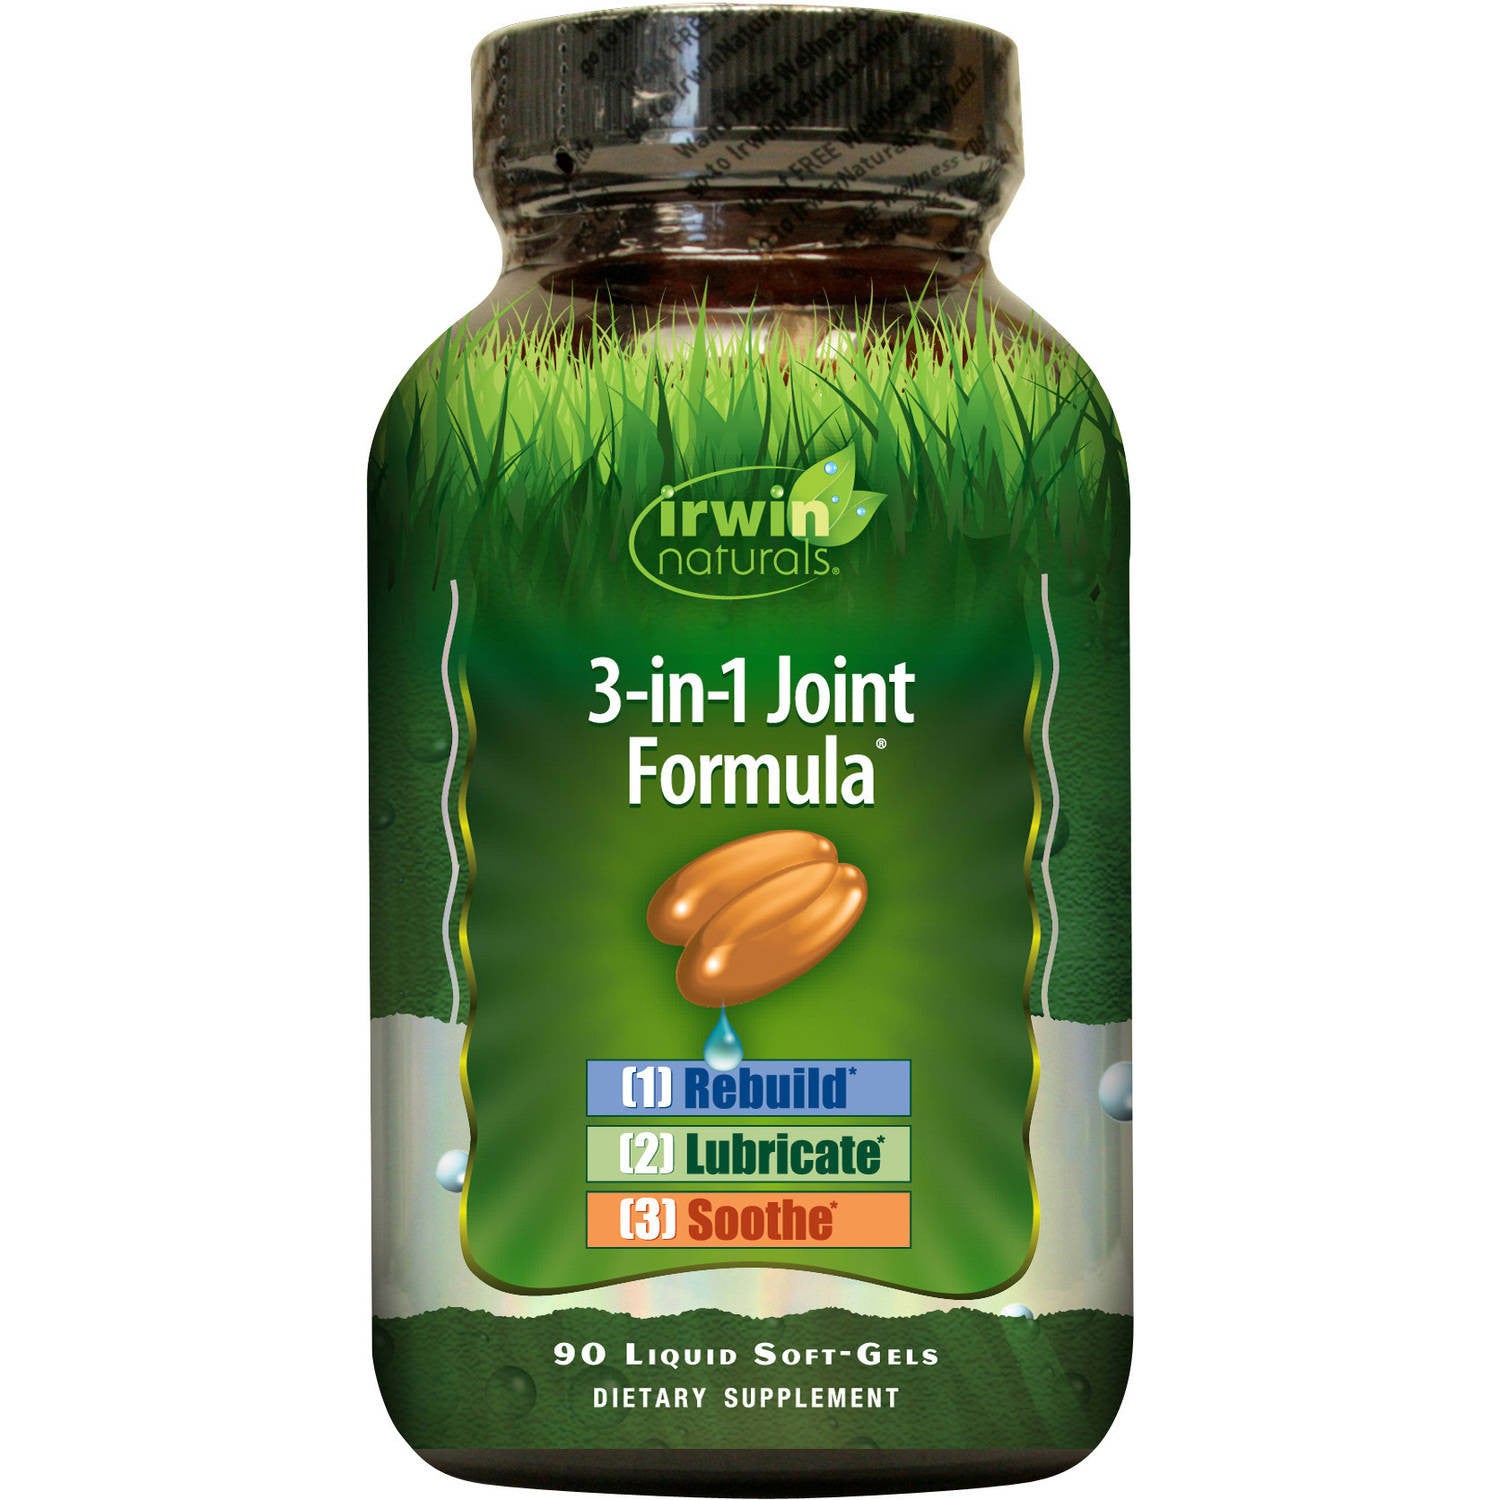 Irwin Naturals 3-in-1 Joint Formula, 90 Liquid Soft-Gels